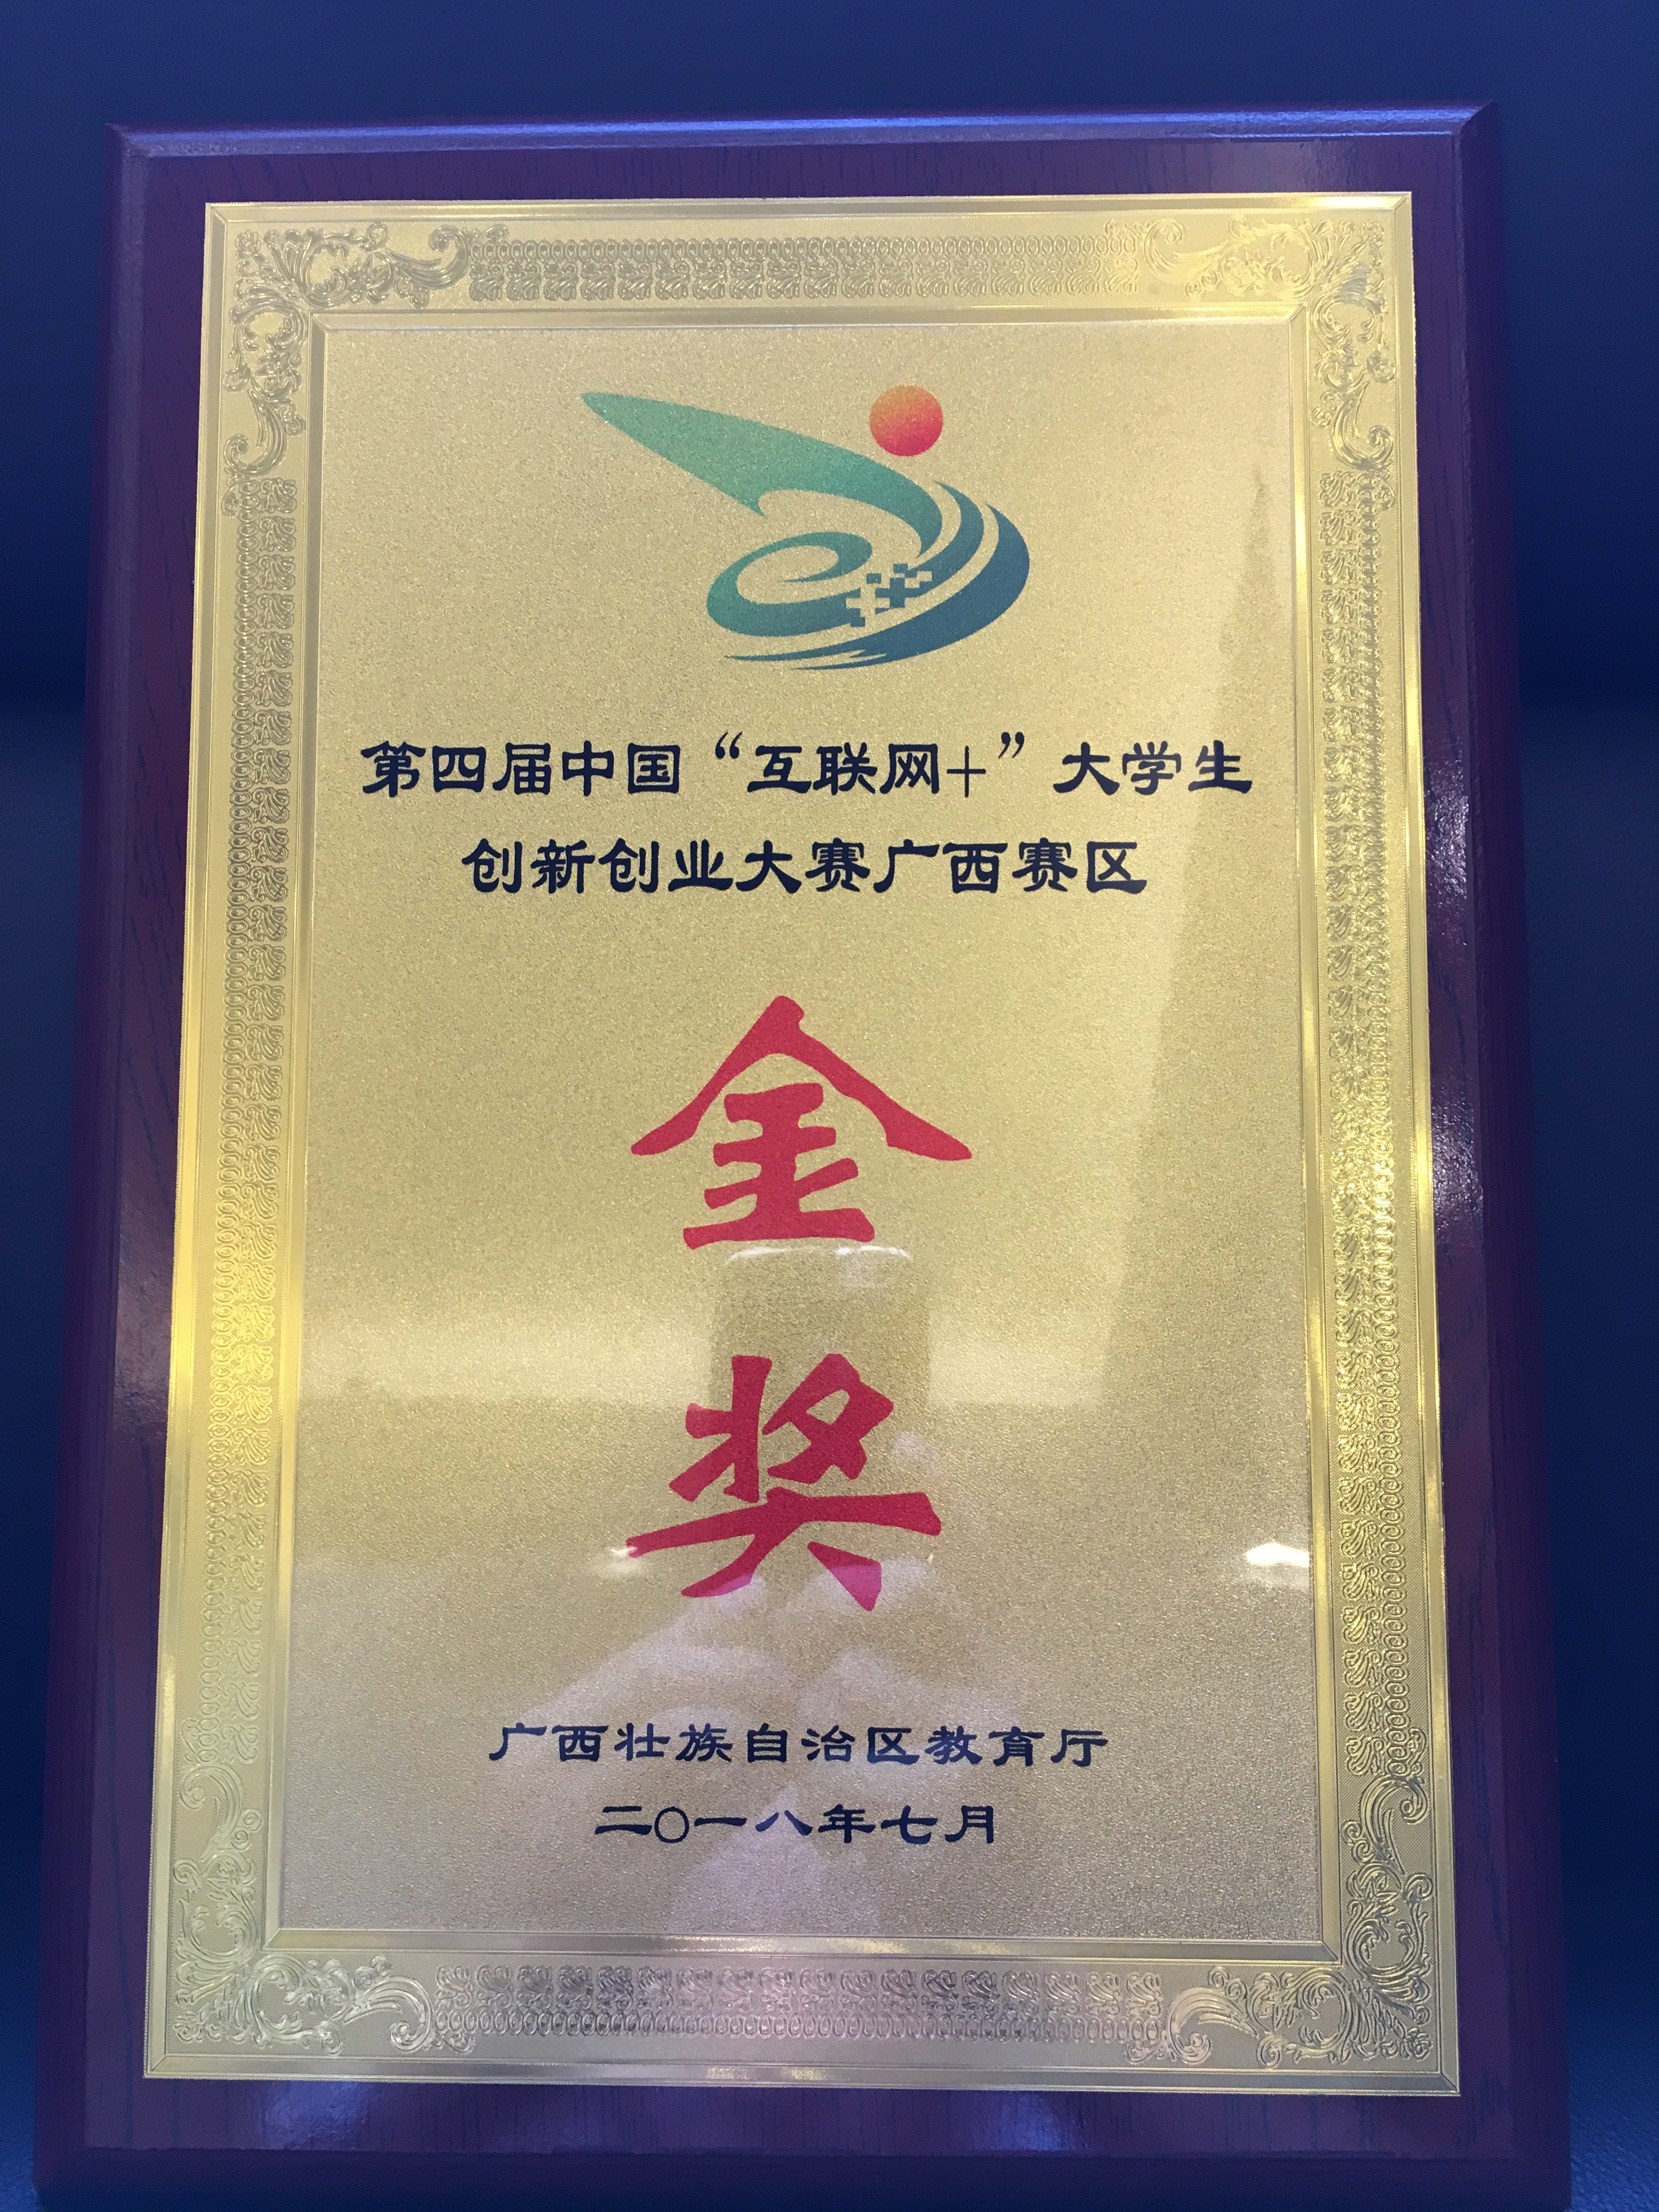 第四届中国“互联网+”大学生创新创业大赛广西赛区金奖